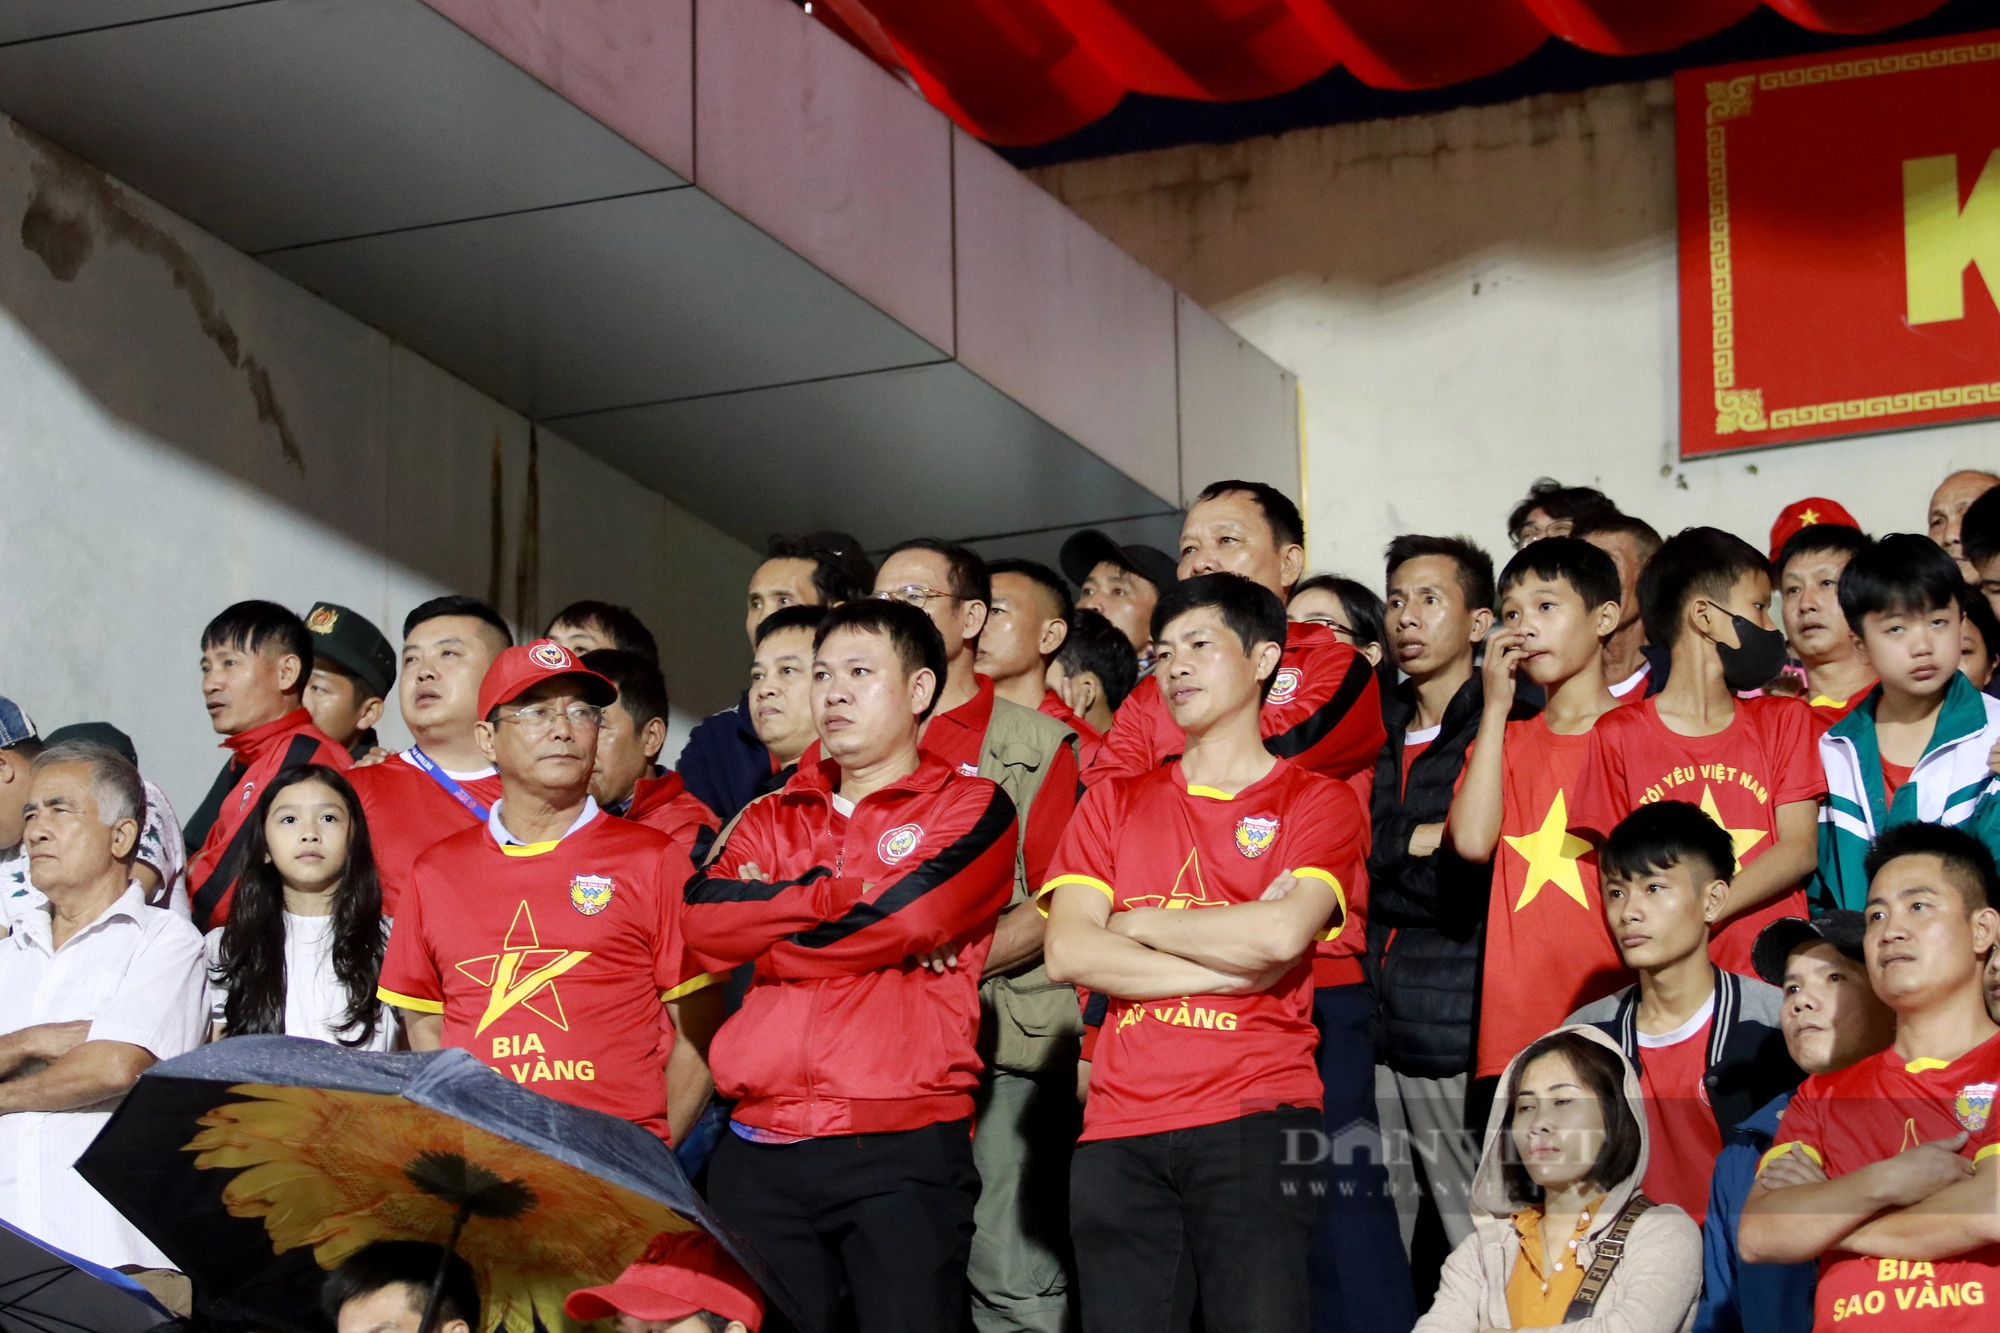 CĐV “đội mưa” cổ vũ cho Hồng Lĩnh Hà Tĩnh đấu với Quy Nhơn Bình Định  - Ảnh 14.